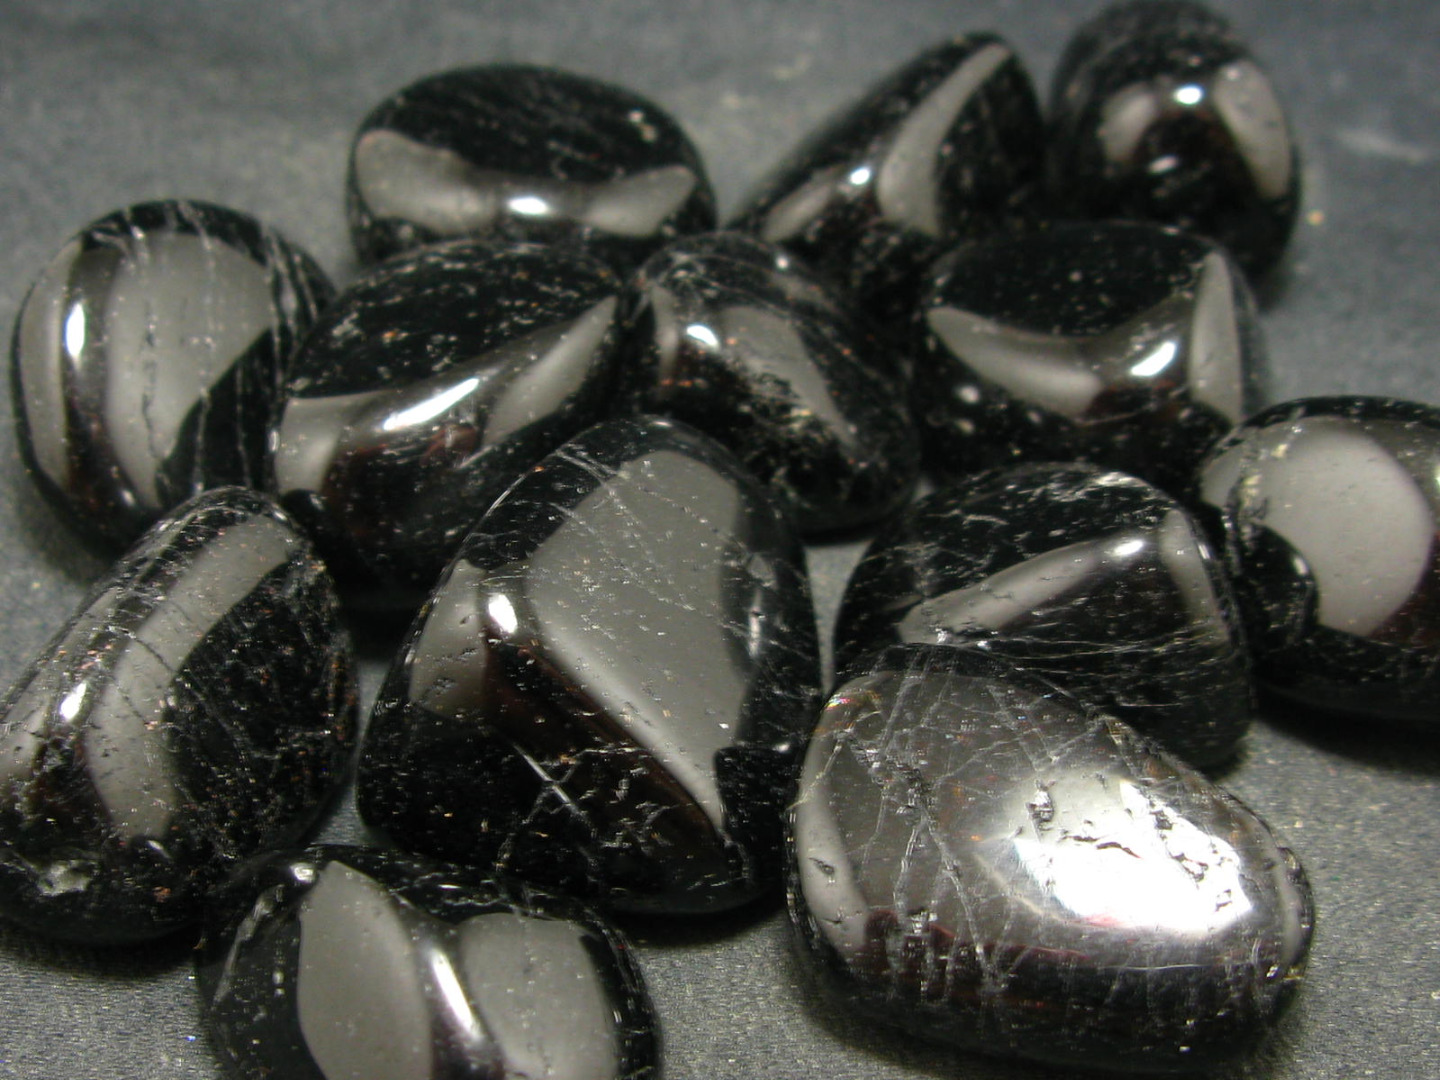 đá sapphire đen cho người sinh năm 1988